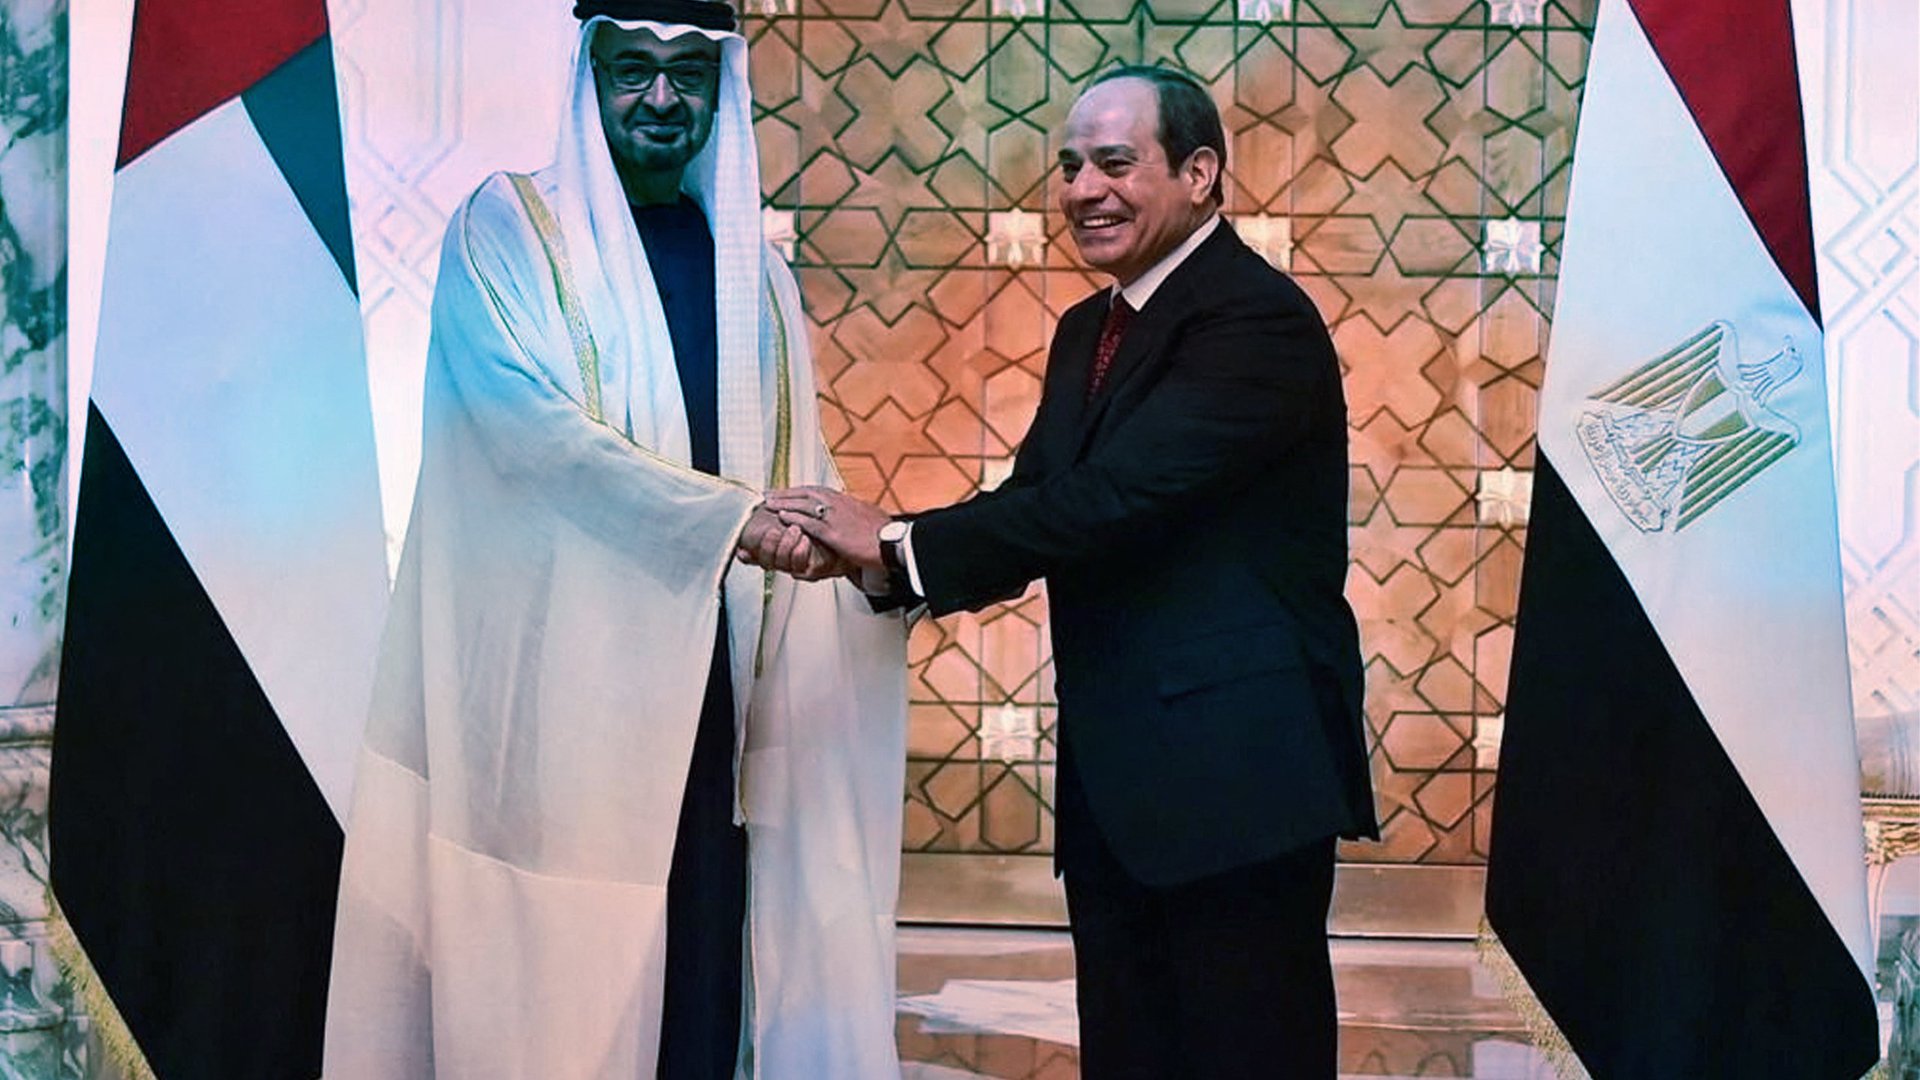 Le président des Émirats arabes unis, Mohammed Ben Zayed, et son homologue égyptien, Abdel Fattah al-Sissi, au palais présidentiel du Caire, le 12 avril 2023. © Egyptian Presidency/Handout via REUTERS